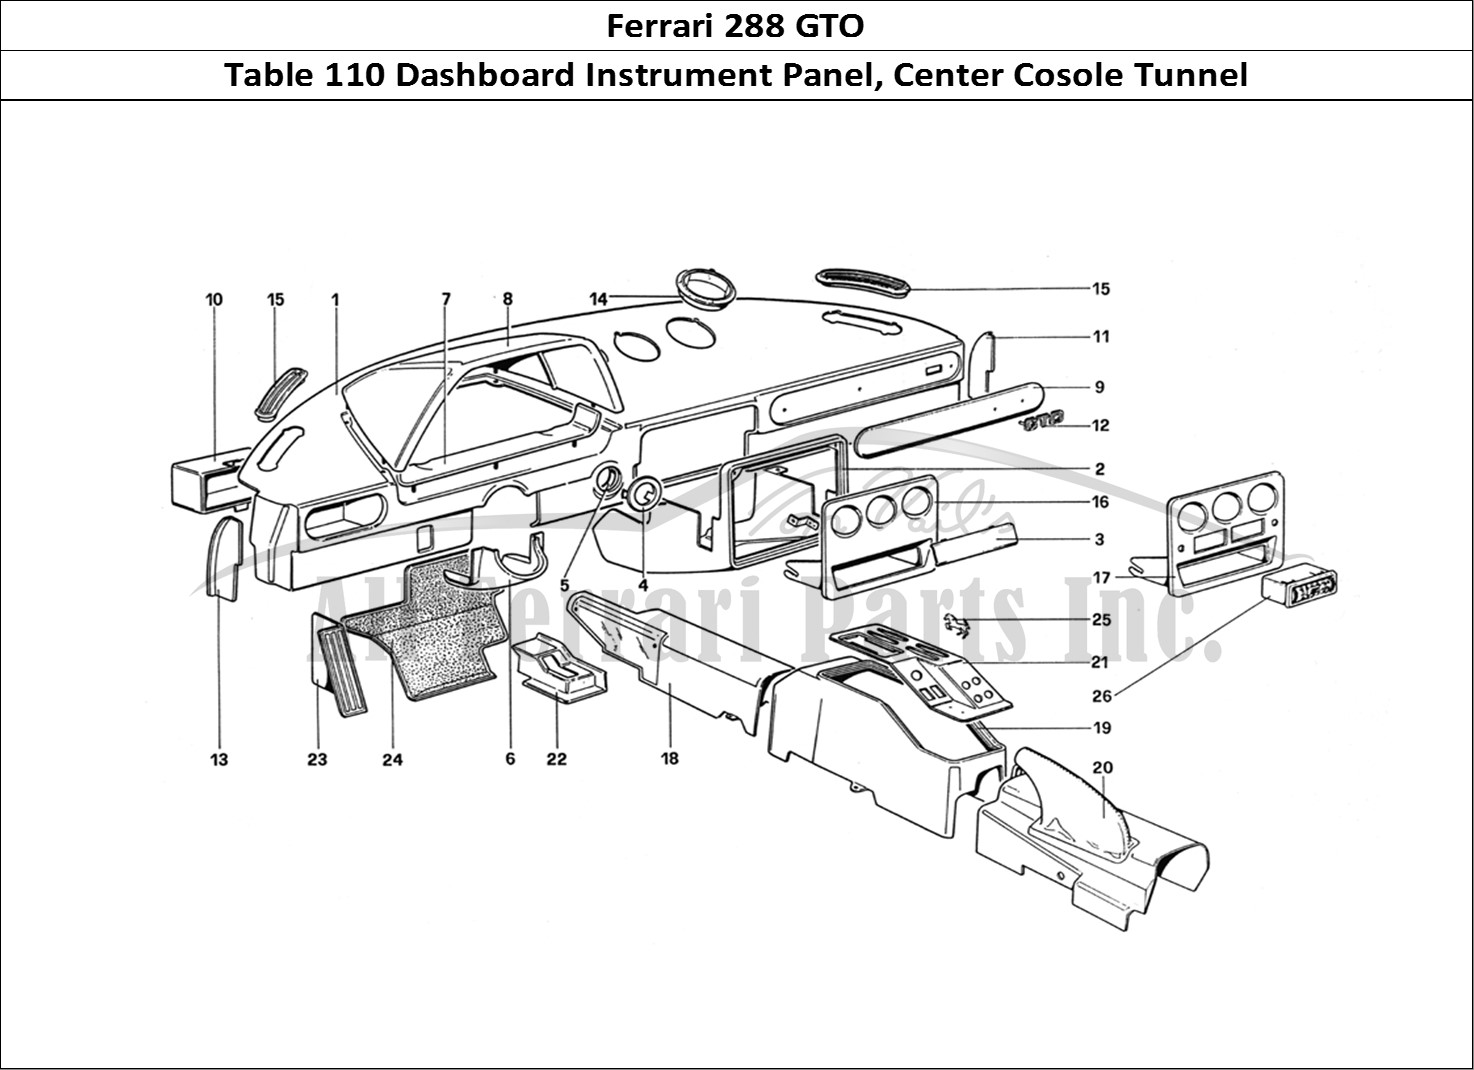 Ferrari Parts Ferrari 288 GTO Page 110 Instrument, Panel and Tun